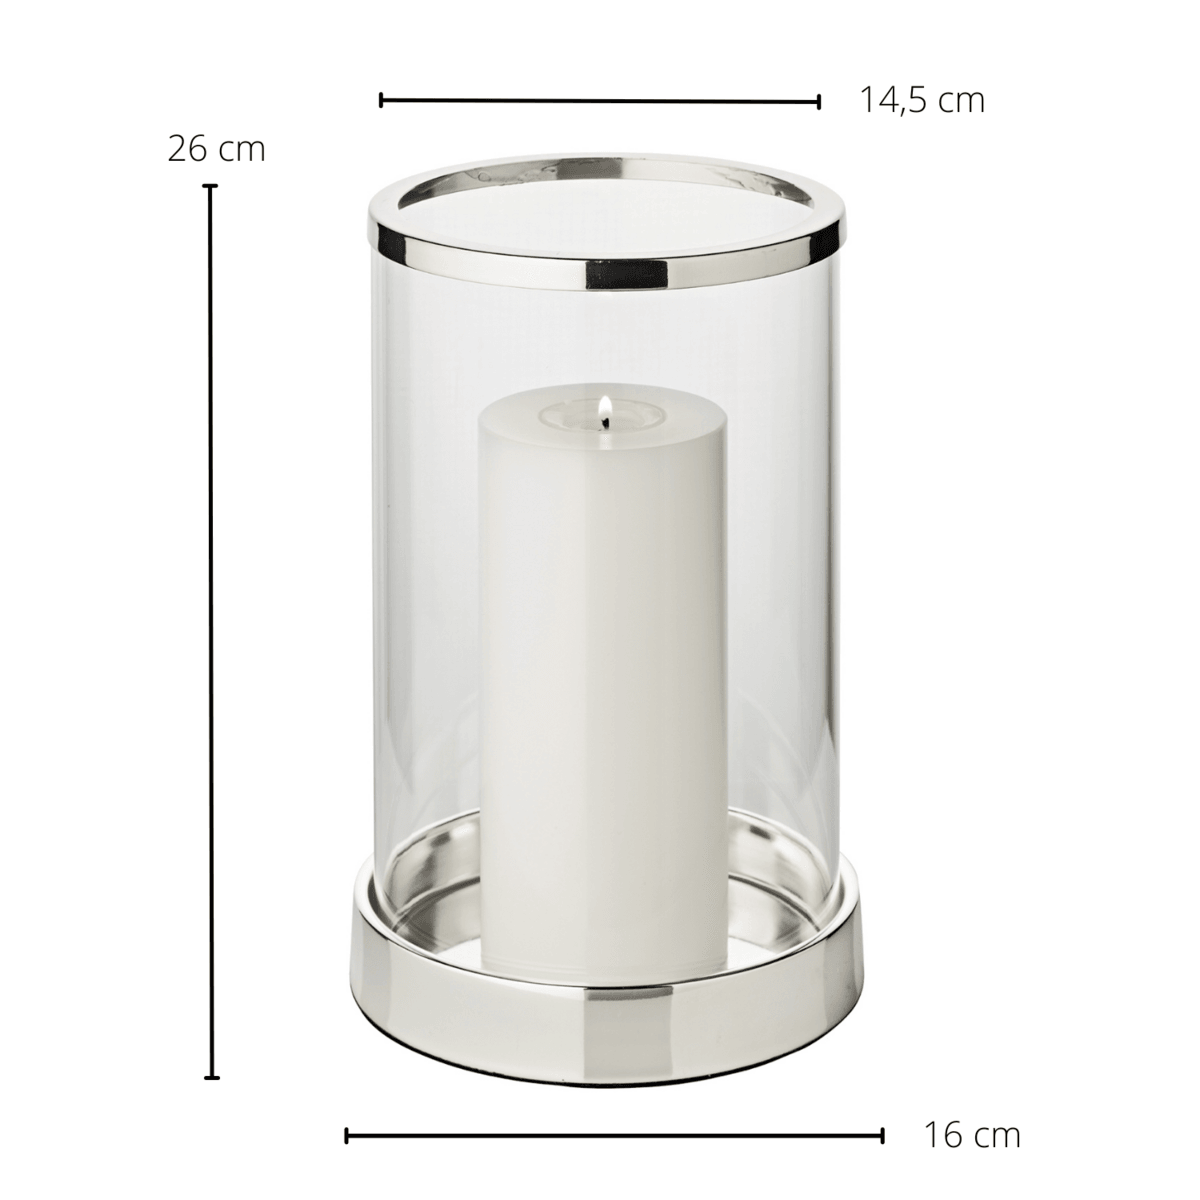 EDZARD Windlicht Sanremo, edel versilbert, anlaufgeschützt, Höhe 26 cm, Durchmesser 16,5 cm - HomeDesign Knaus